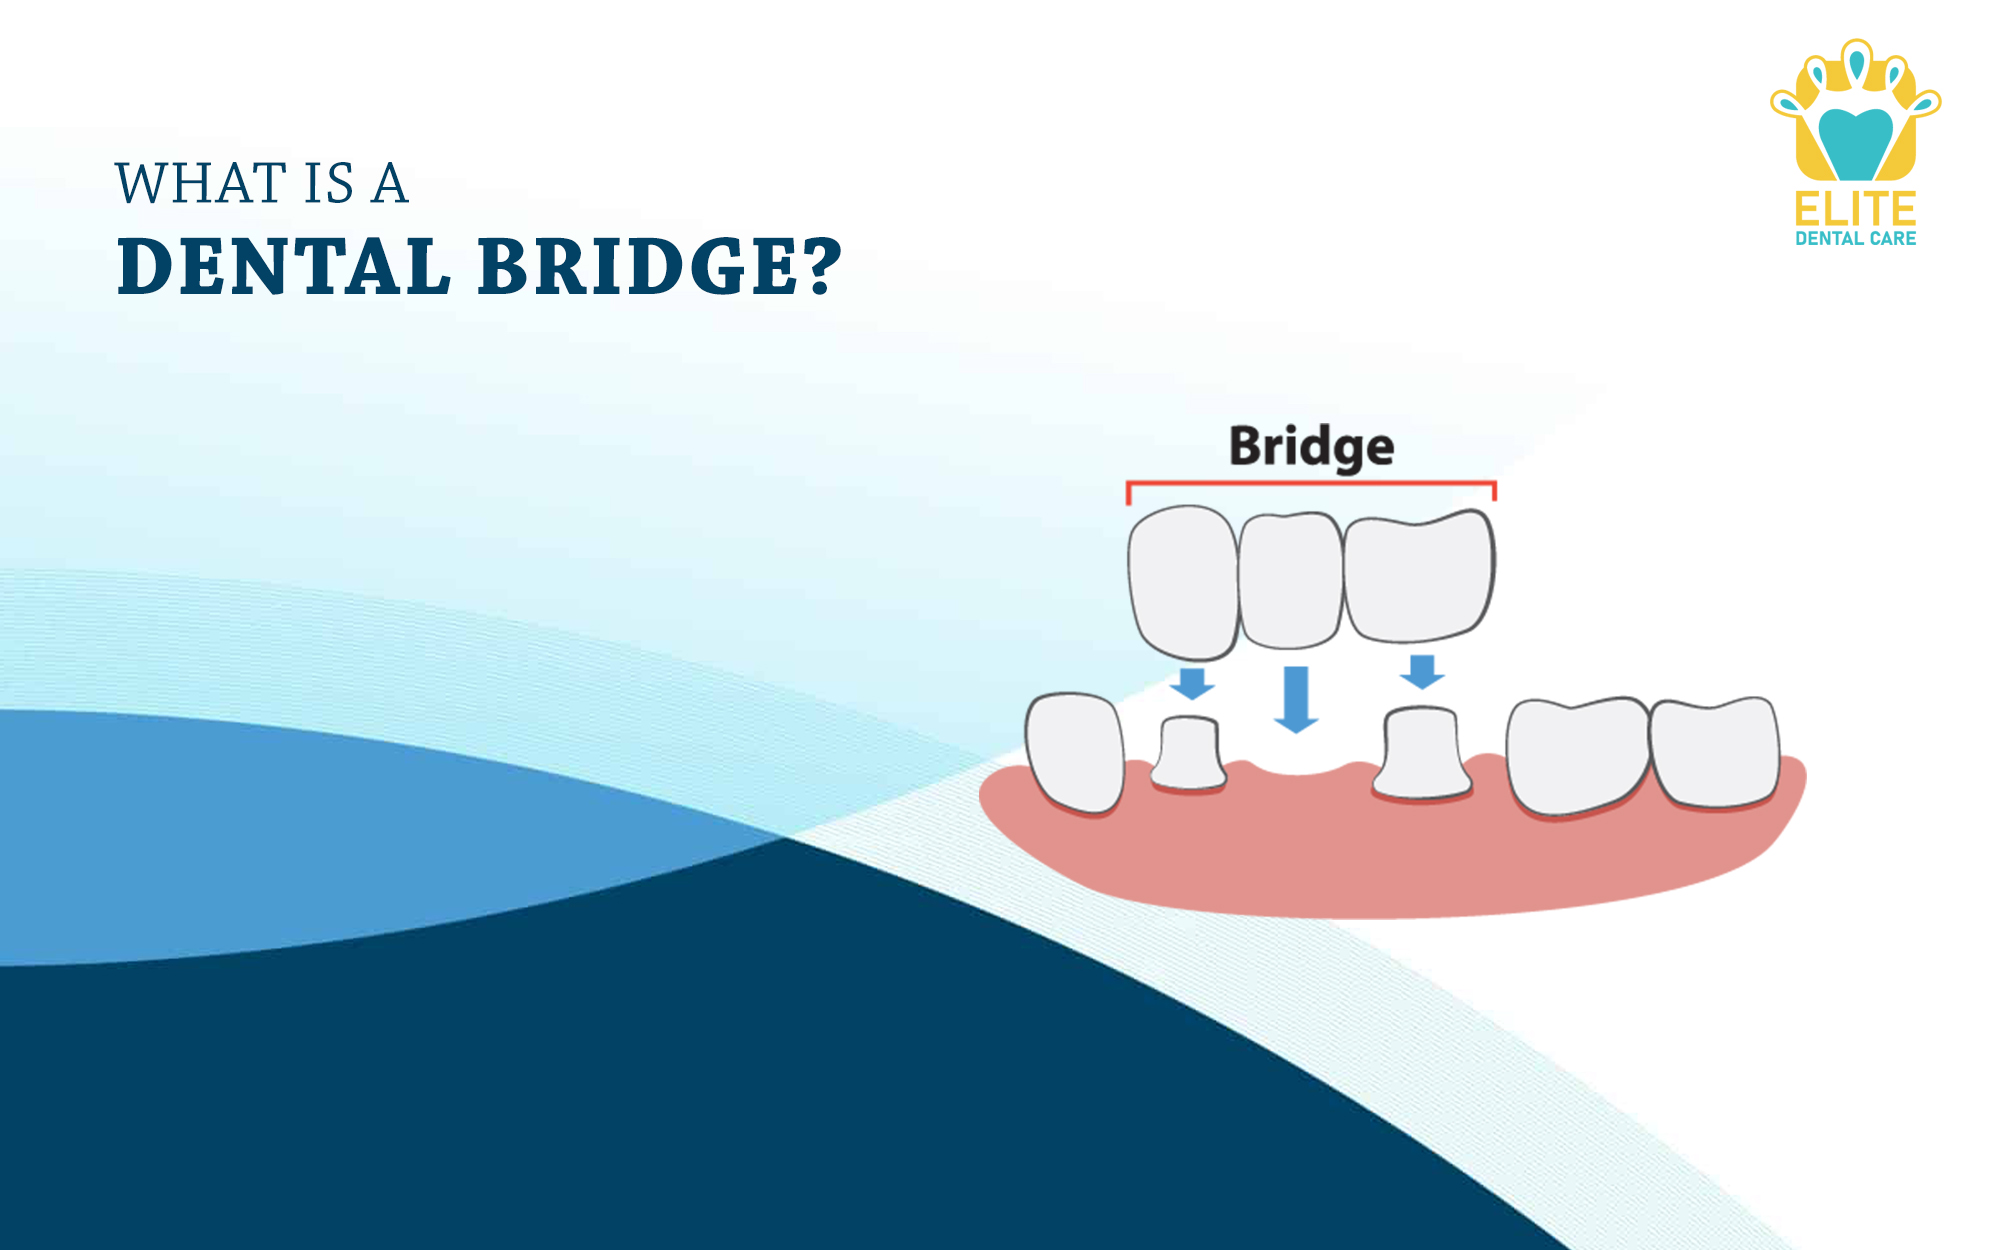 WHAT IS A DENTAL BRIDGE